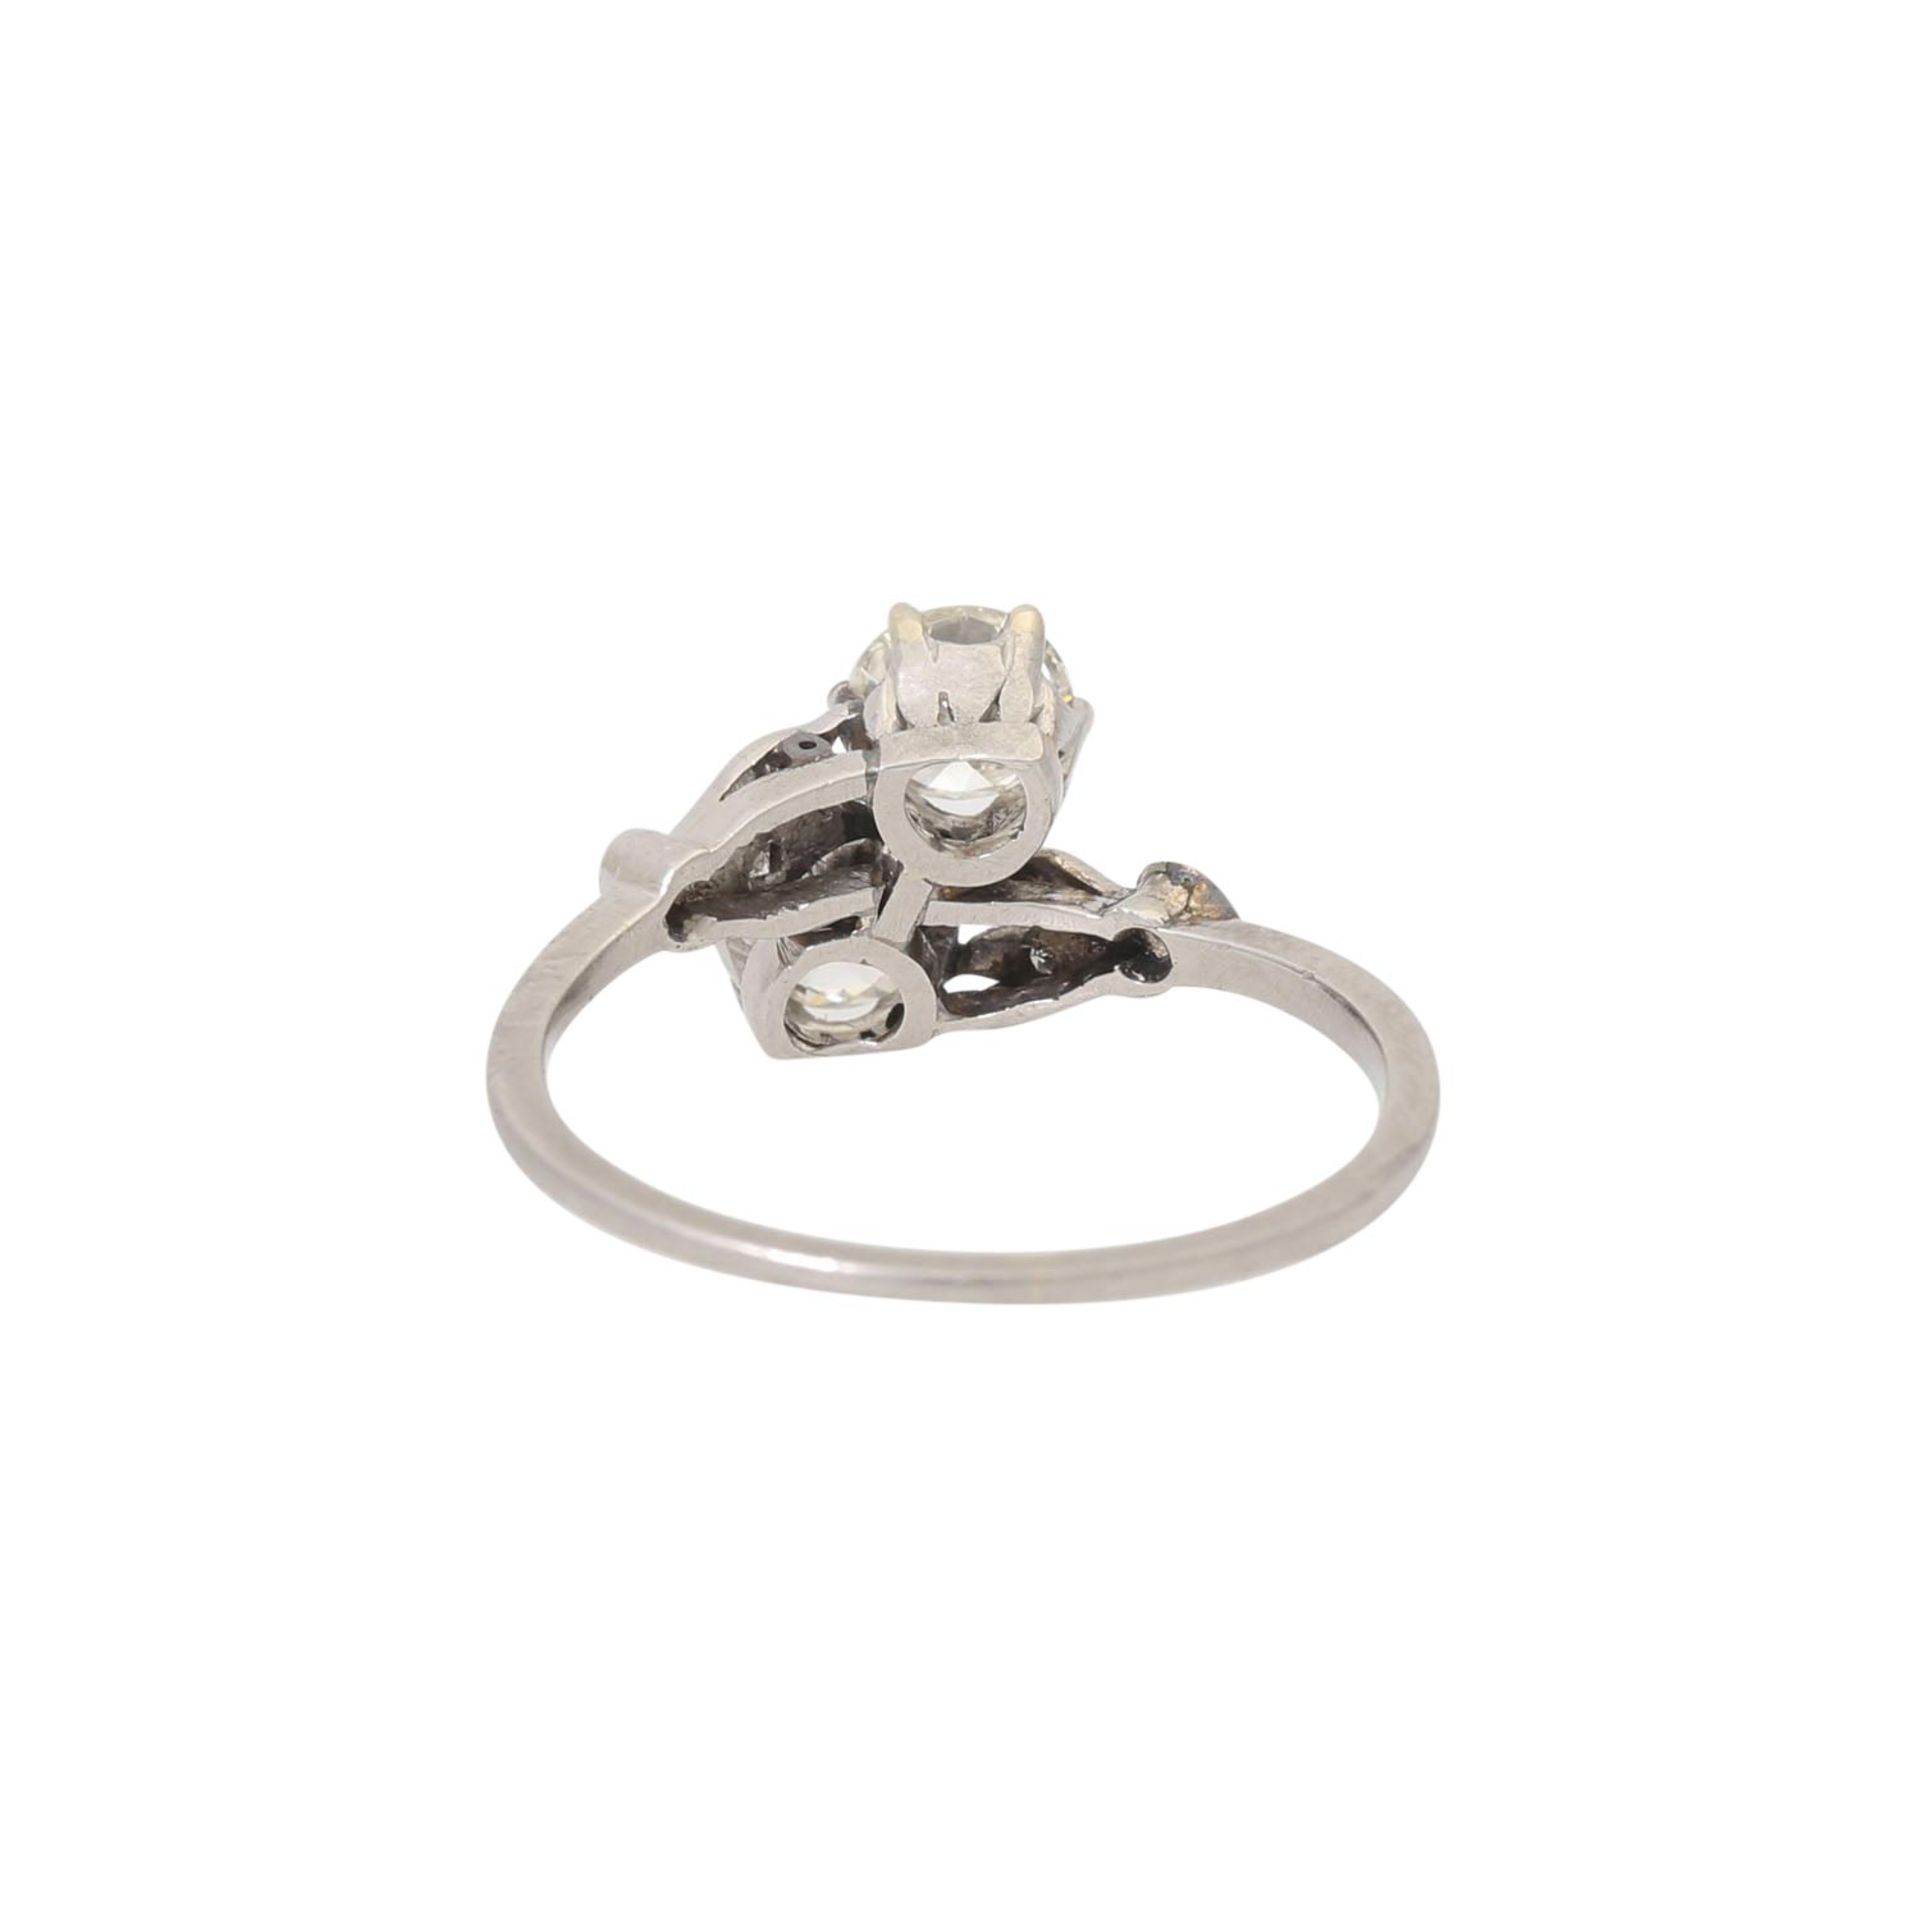 Ring mit 2 Altschliffdiamanten von je ca. 0,4 ct, - Image 3 of 4